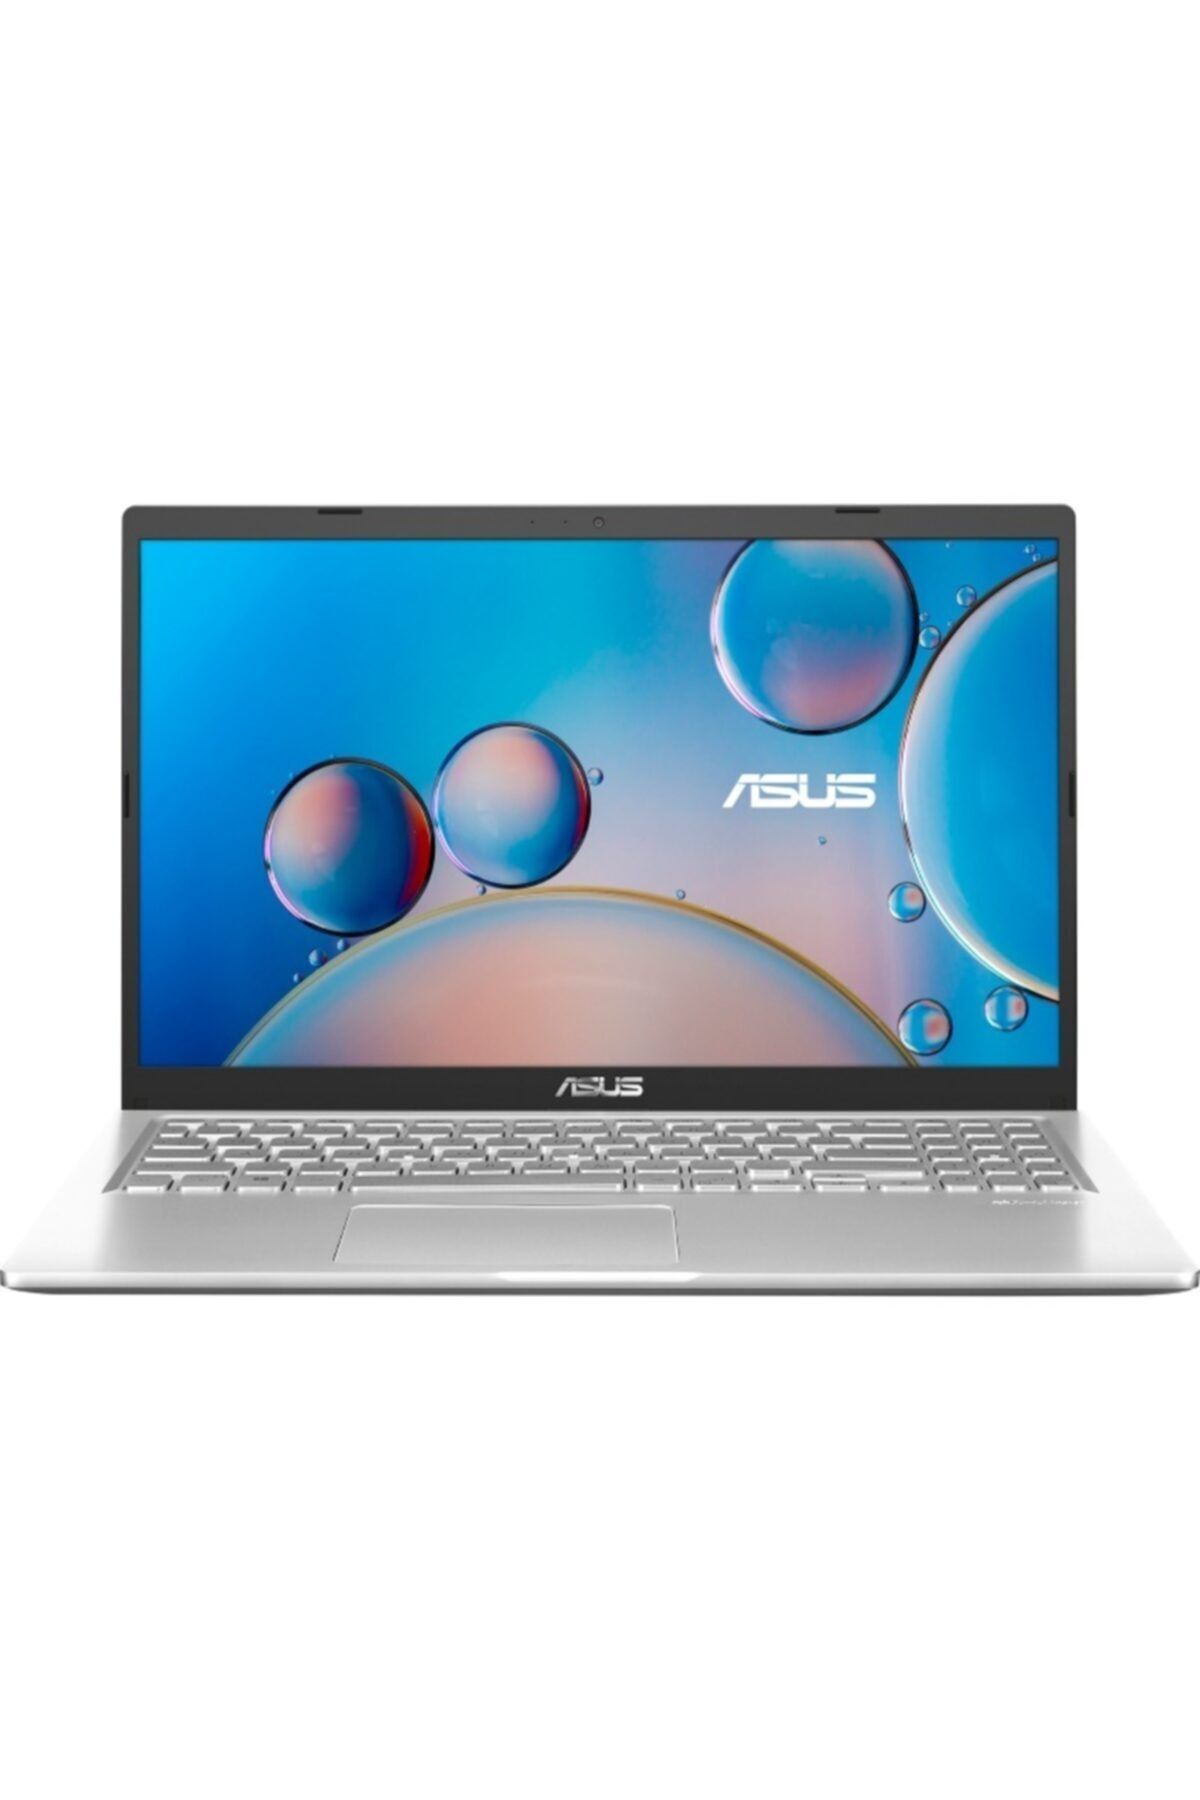 ASUS X515ja-br088 Intel Core I3 1005g1 4gb 256gb Ssd Freedos 15.6" Taşınabilir Bilgisayar